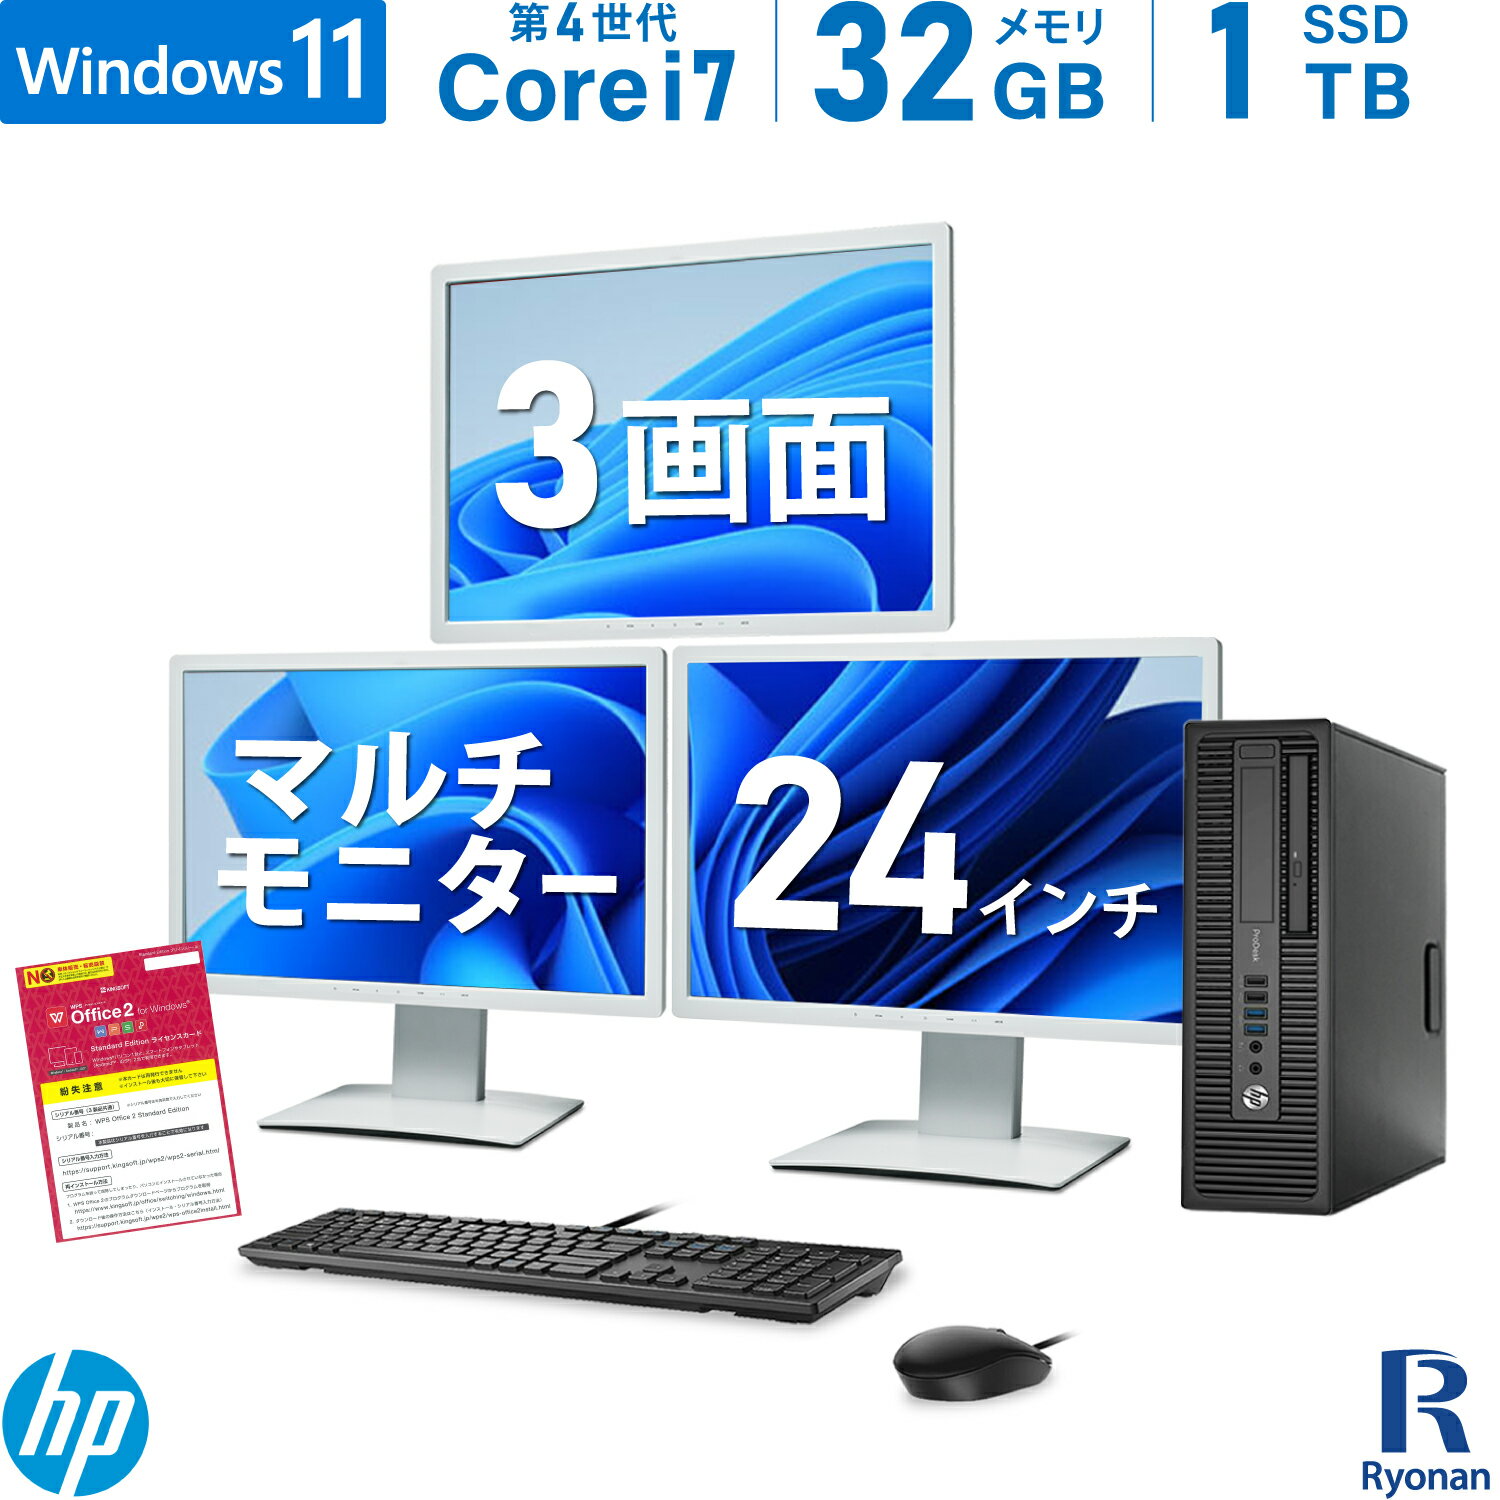 HP ProDesk 600 G1 SFF 第4世代 Core i7 メモリ:32GB 新品SSD:1TB デスクトップパソコン DVD-ROM 新品キーボード マウス 富士通 VL-B24W-7A 24インチ IPSパネル 液晶 スピーカー搭載 1920×1200 モニター Office付 3画面 マルチディスプレイ